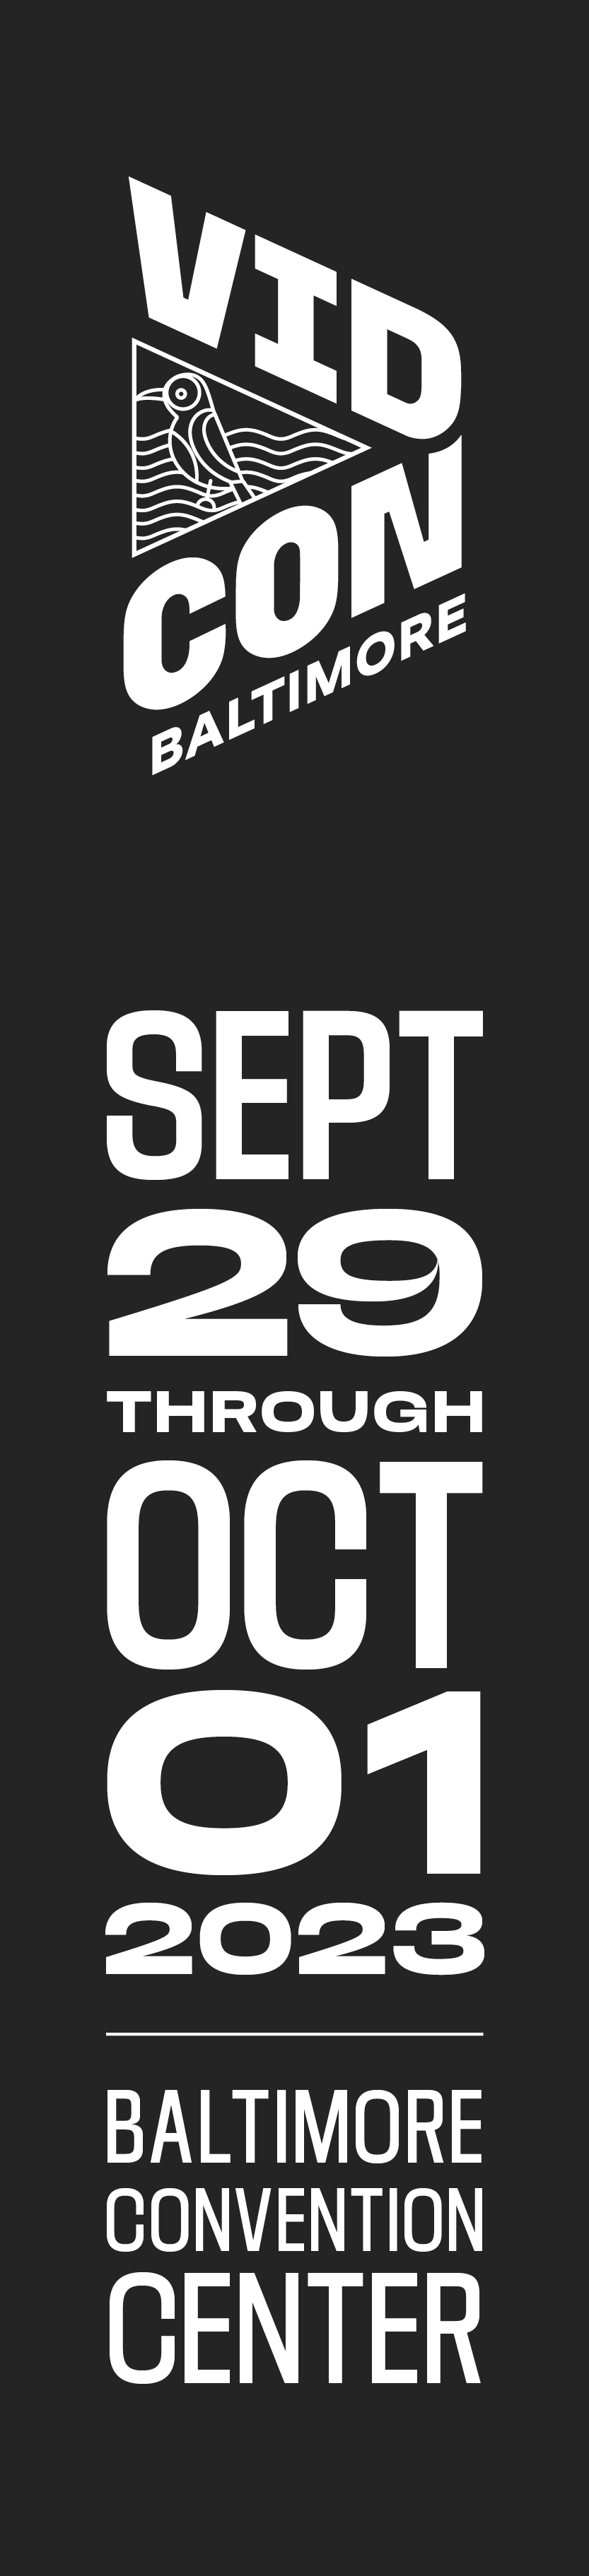 VidCon Baltimore - Sept 29 through Oct 01, 2023 - Baltimore Convention Center